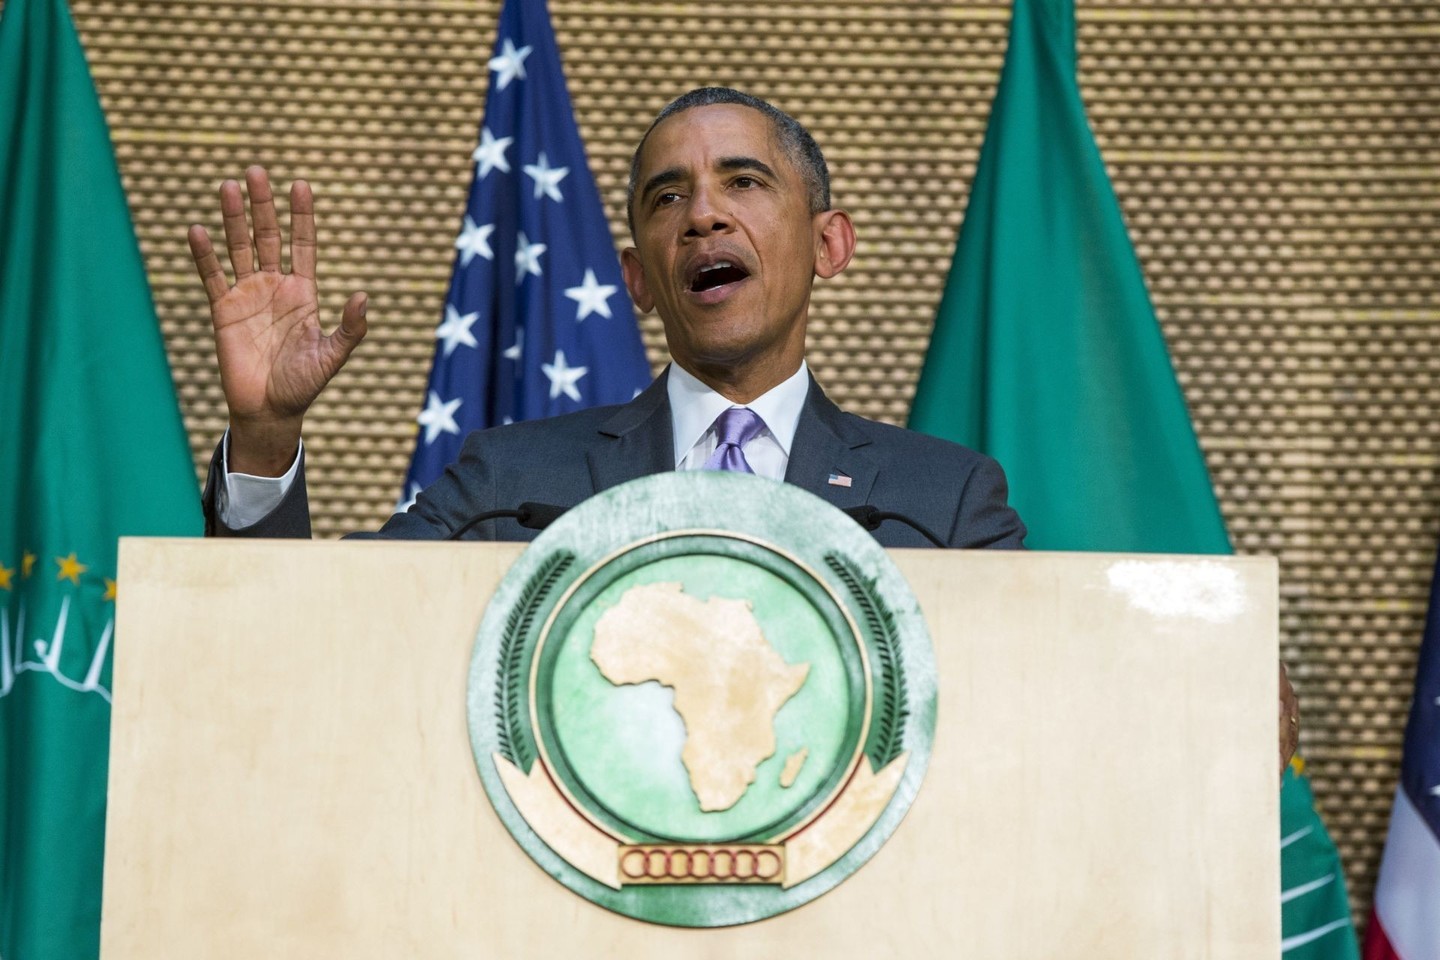 B.Obama antradienį pasmerkė Afrikos lyderius, nesutinkančius perduoti valdžios savo įpėdiniams, pasibaigus jų kadencijai.<br>AP nuotr.